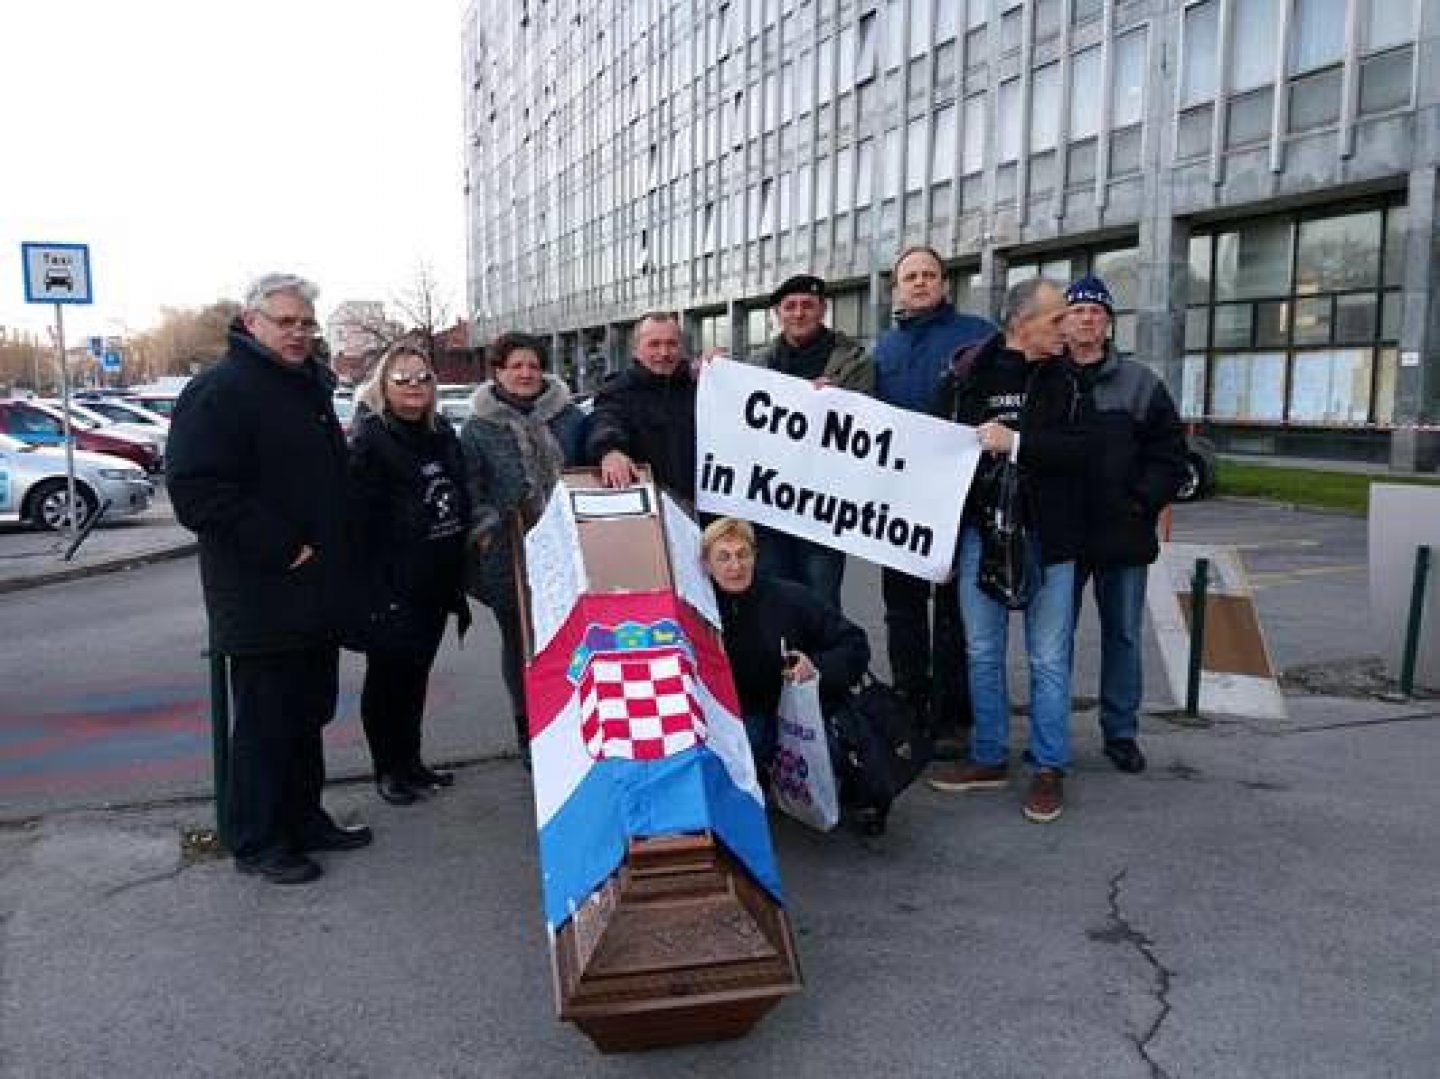 TRAŽILI OSTAVKU BOŠNJAKOVIĆA: S lijesom prosvjedovali ispred Općinskog suda i Ministarstva pravosuđa